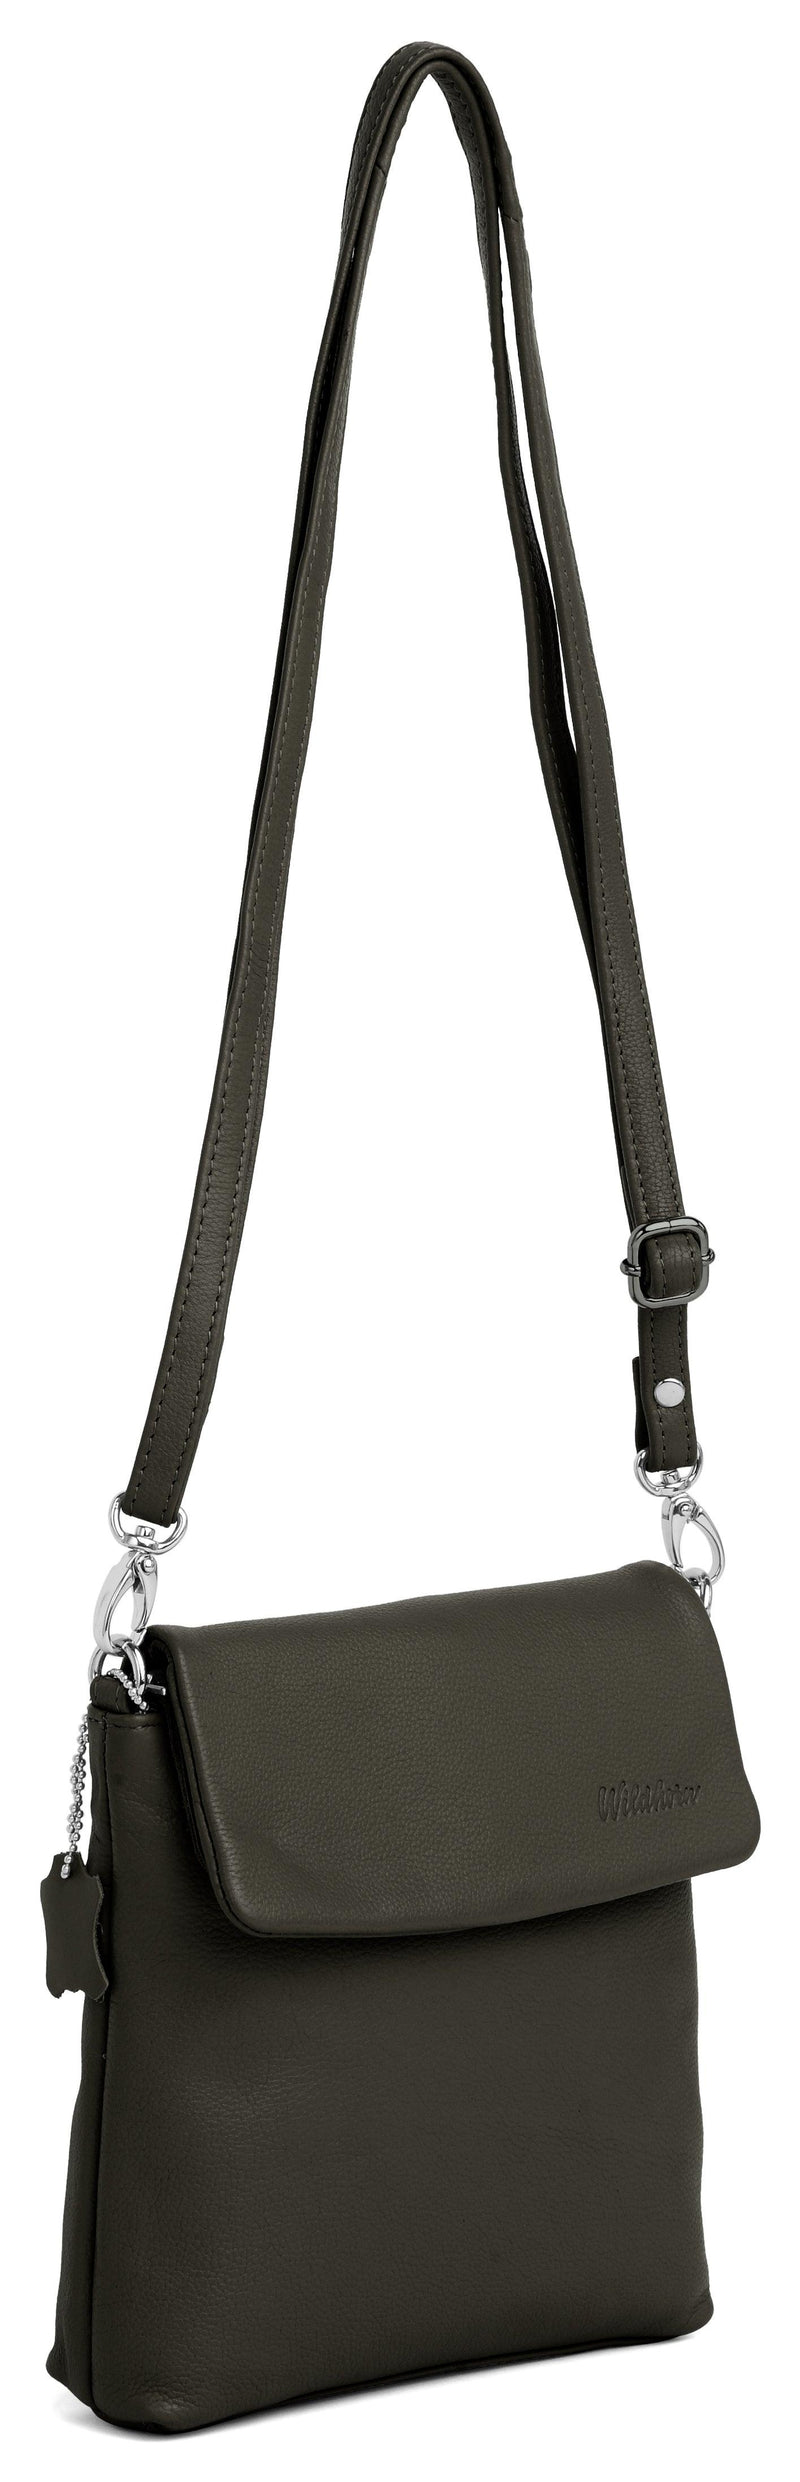 WILDHORN Genuine Leather Ladies Crossbody Bag | Hand Bag |Shoulder Bag with Adjustable Strap for Girls & Women. - WILDHORN